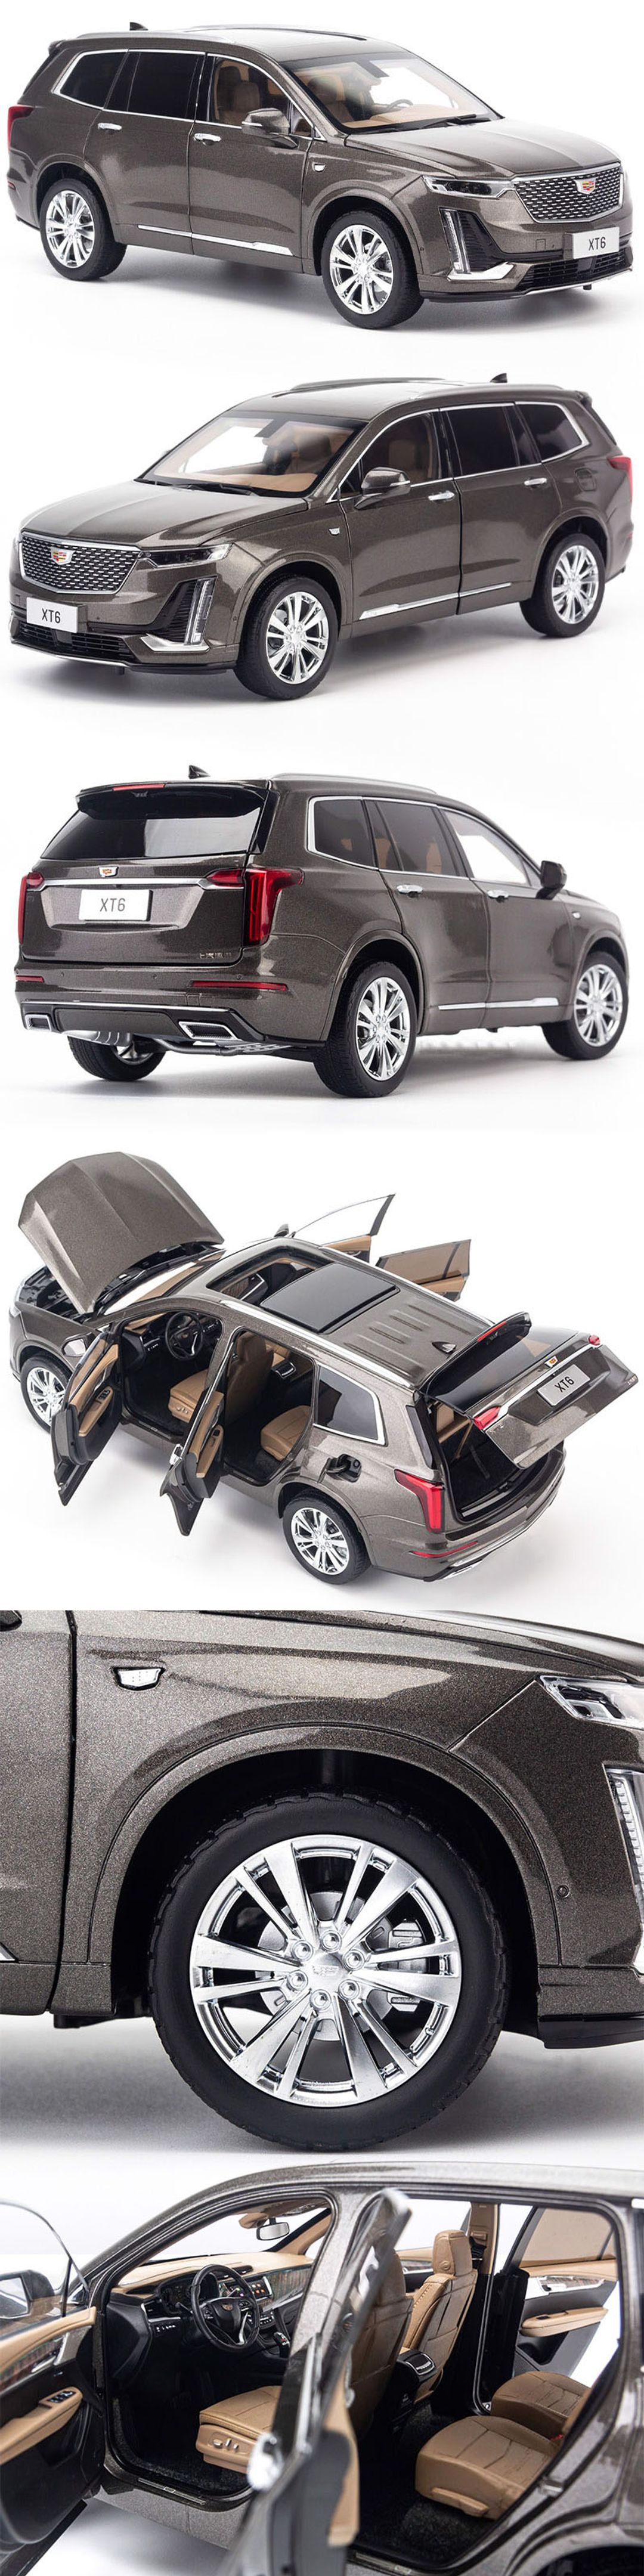 Mô hình Xe Cadillac XT6 2019 1:18